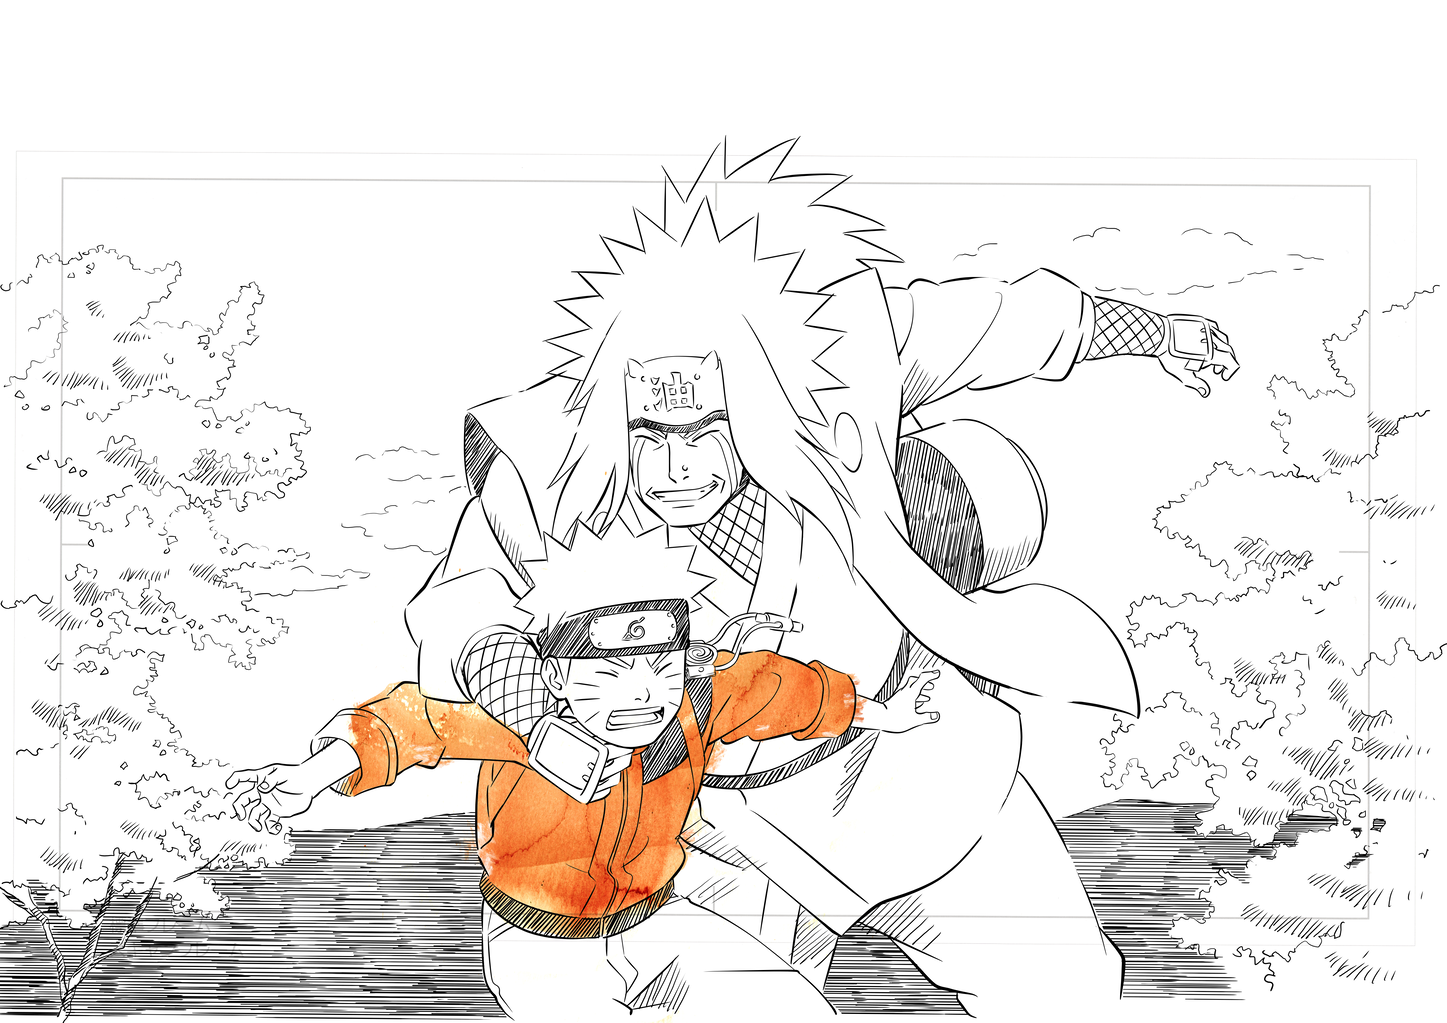 minato namikaze - Google Search  Naruto sketch, Naruto drawings, Naruto art